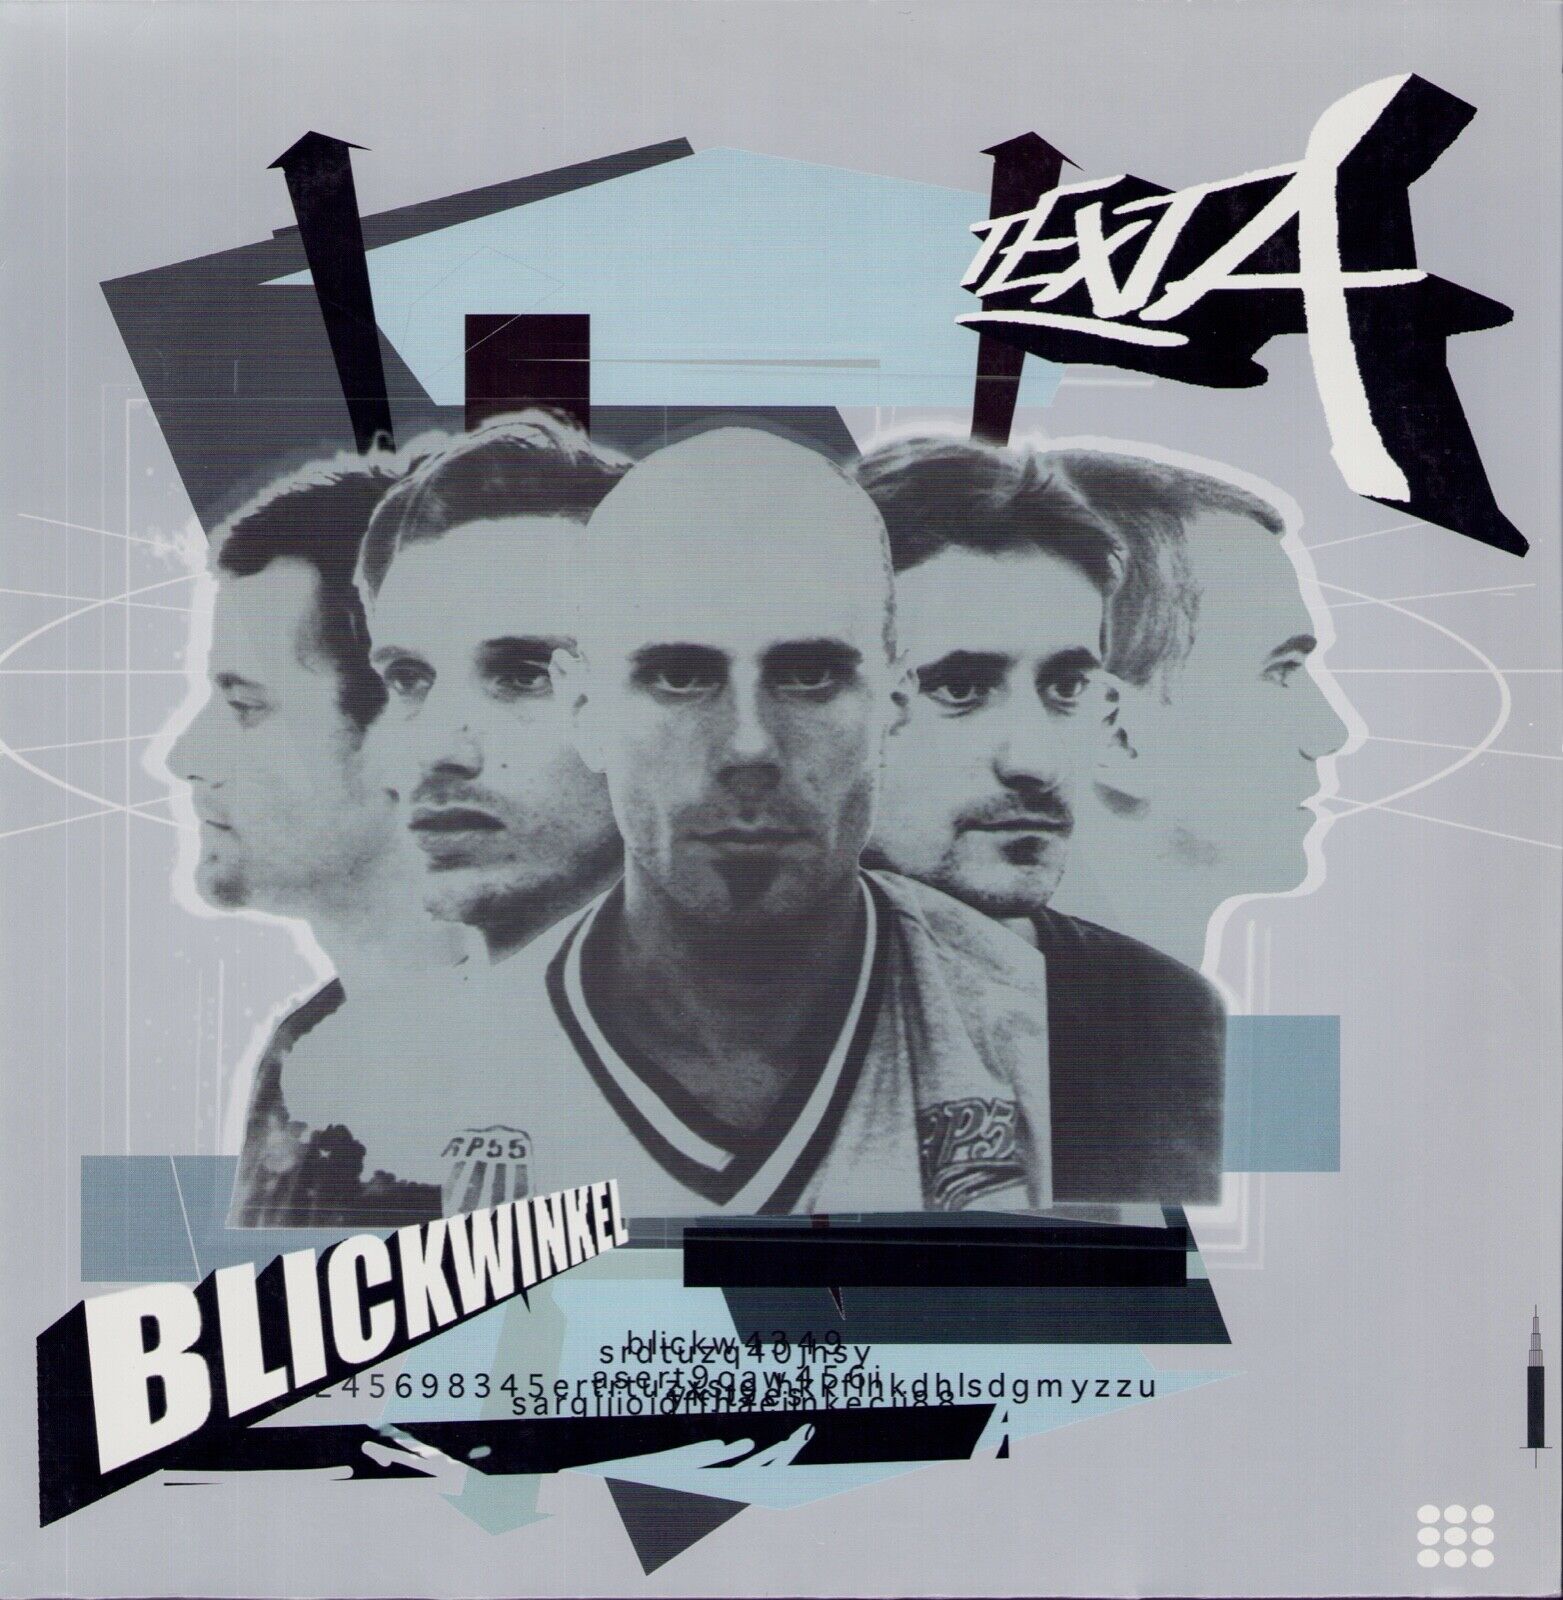 Texta - Blickwinkel Vinyl 2LP